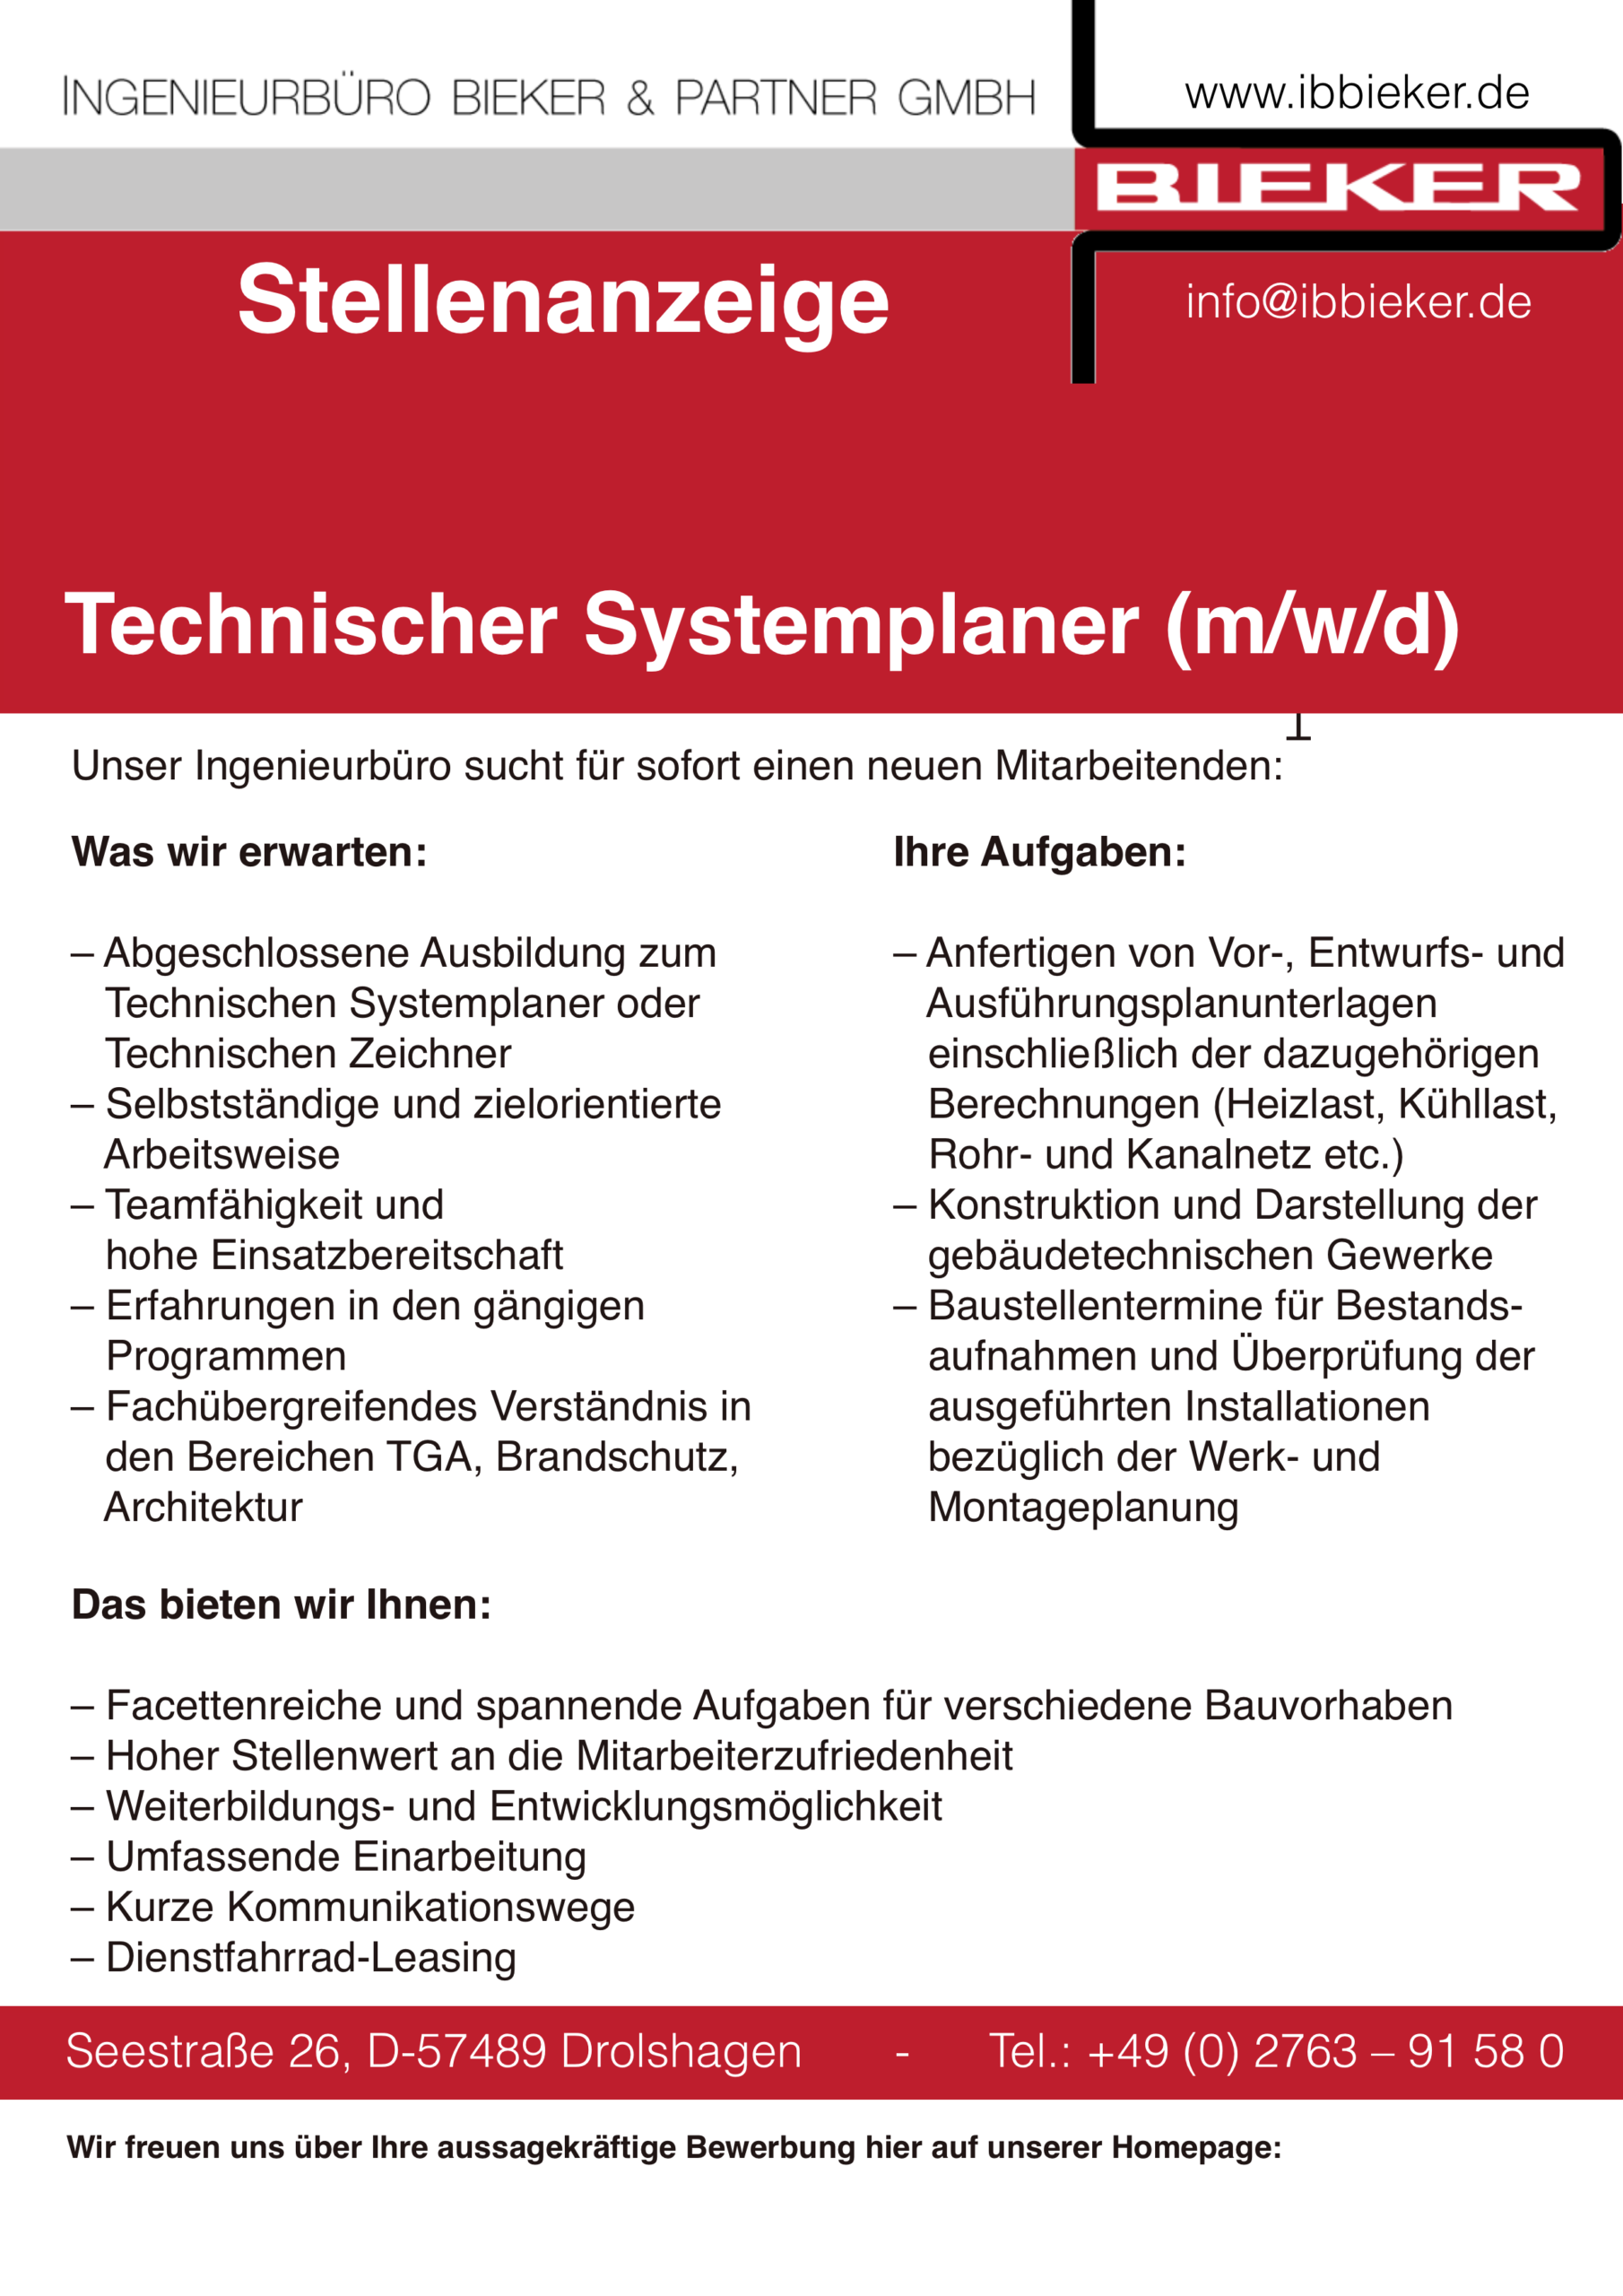 Stellenanzeige Technischer Systemplaner - Bieker & Partner - Drolshagen-Herpel.